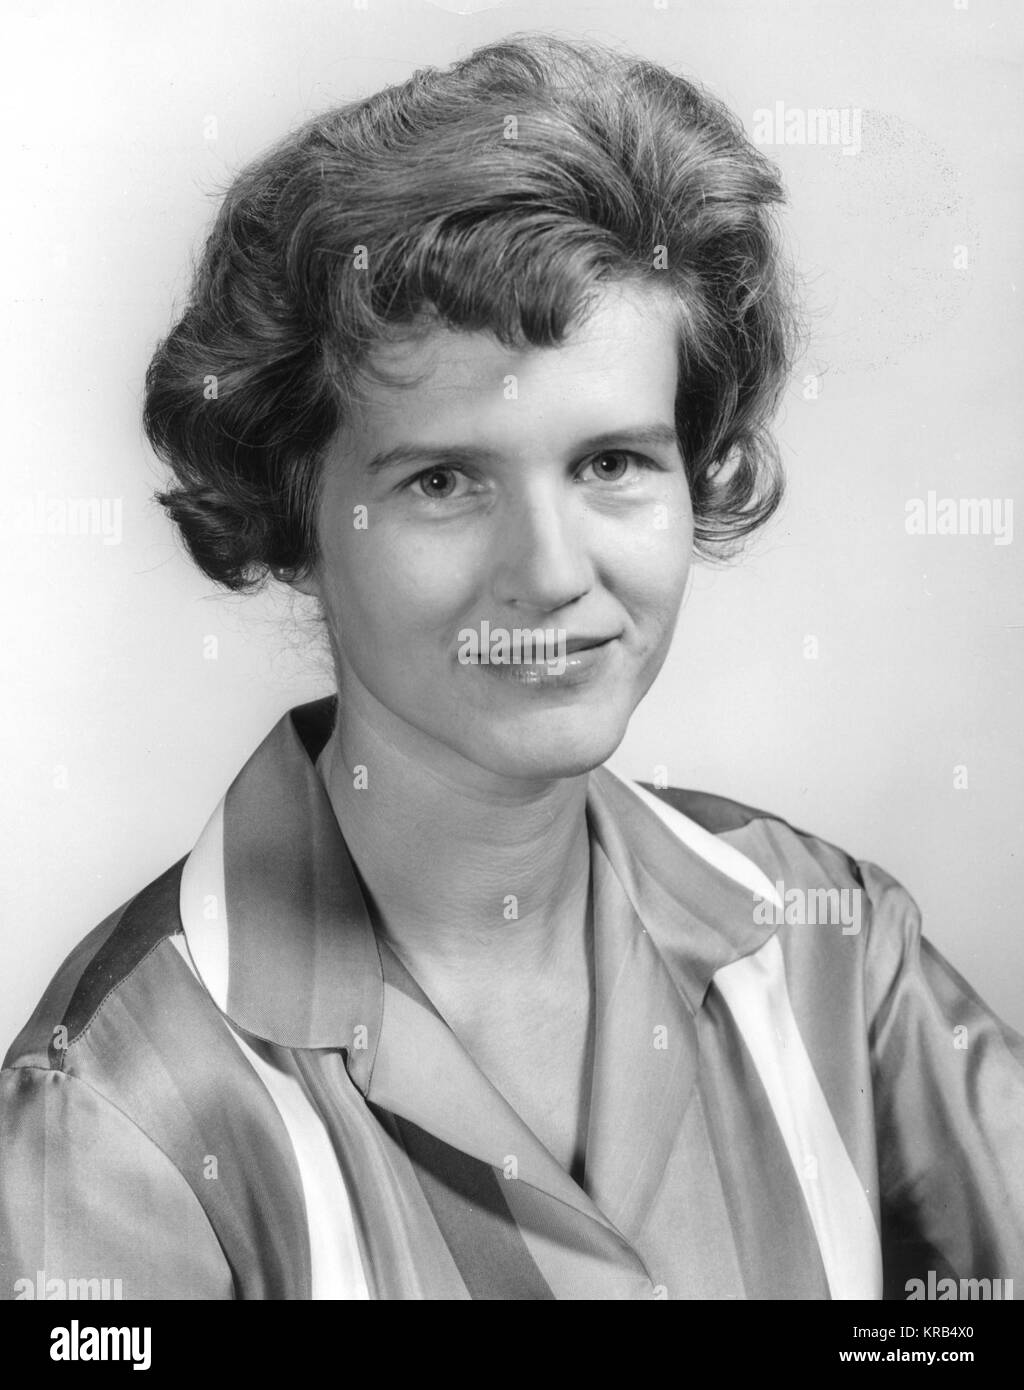 Dies ist ein portrait VON MARIA VON BRAUN, die Ehefrau des berühmten Marshall Space Flight Director Wernher von Braun. Maria von Braun 6330121 original Stockfoto